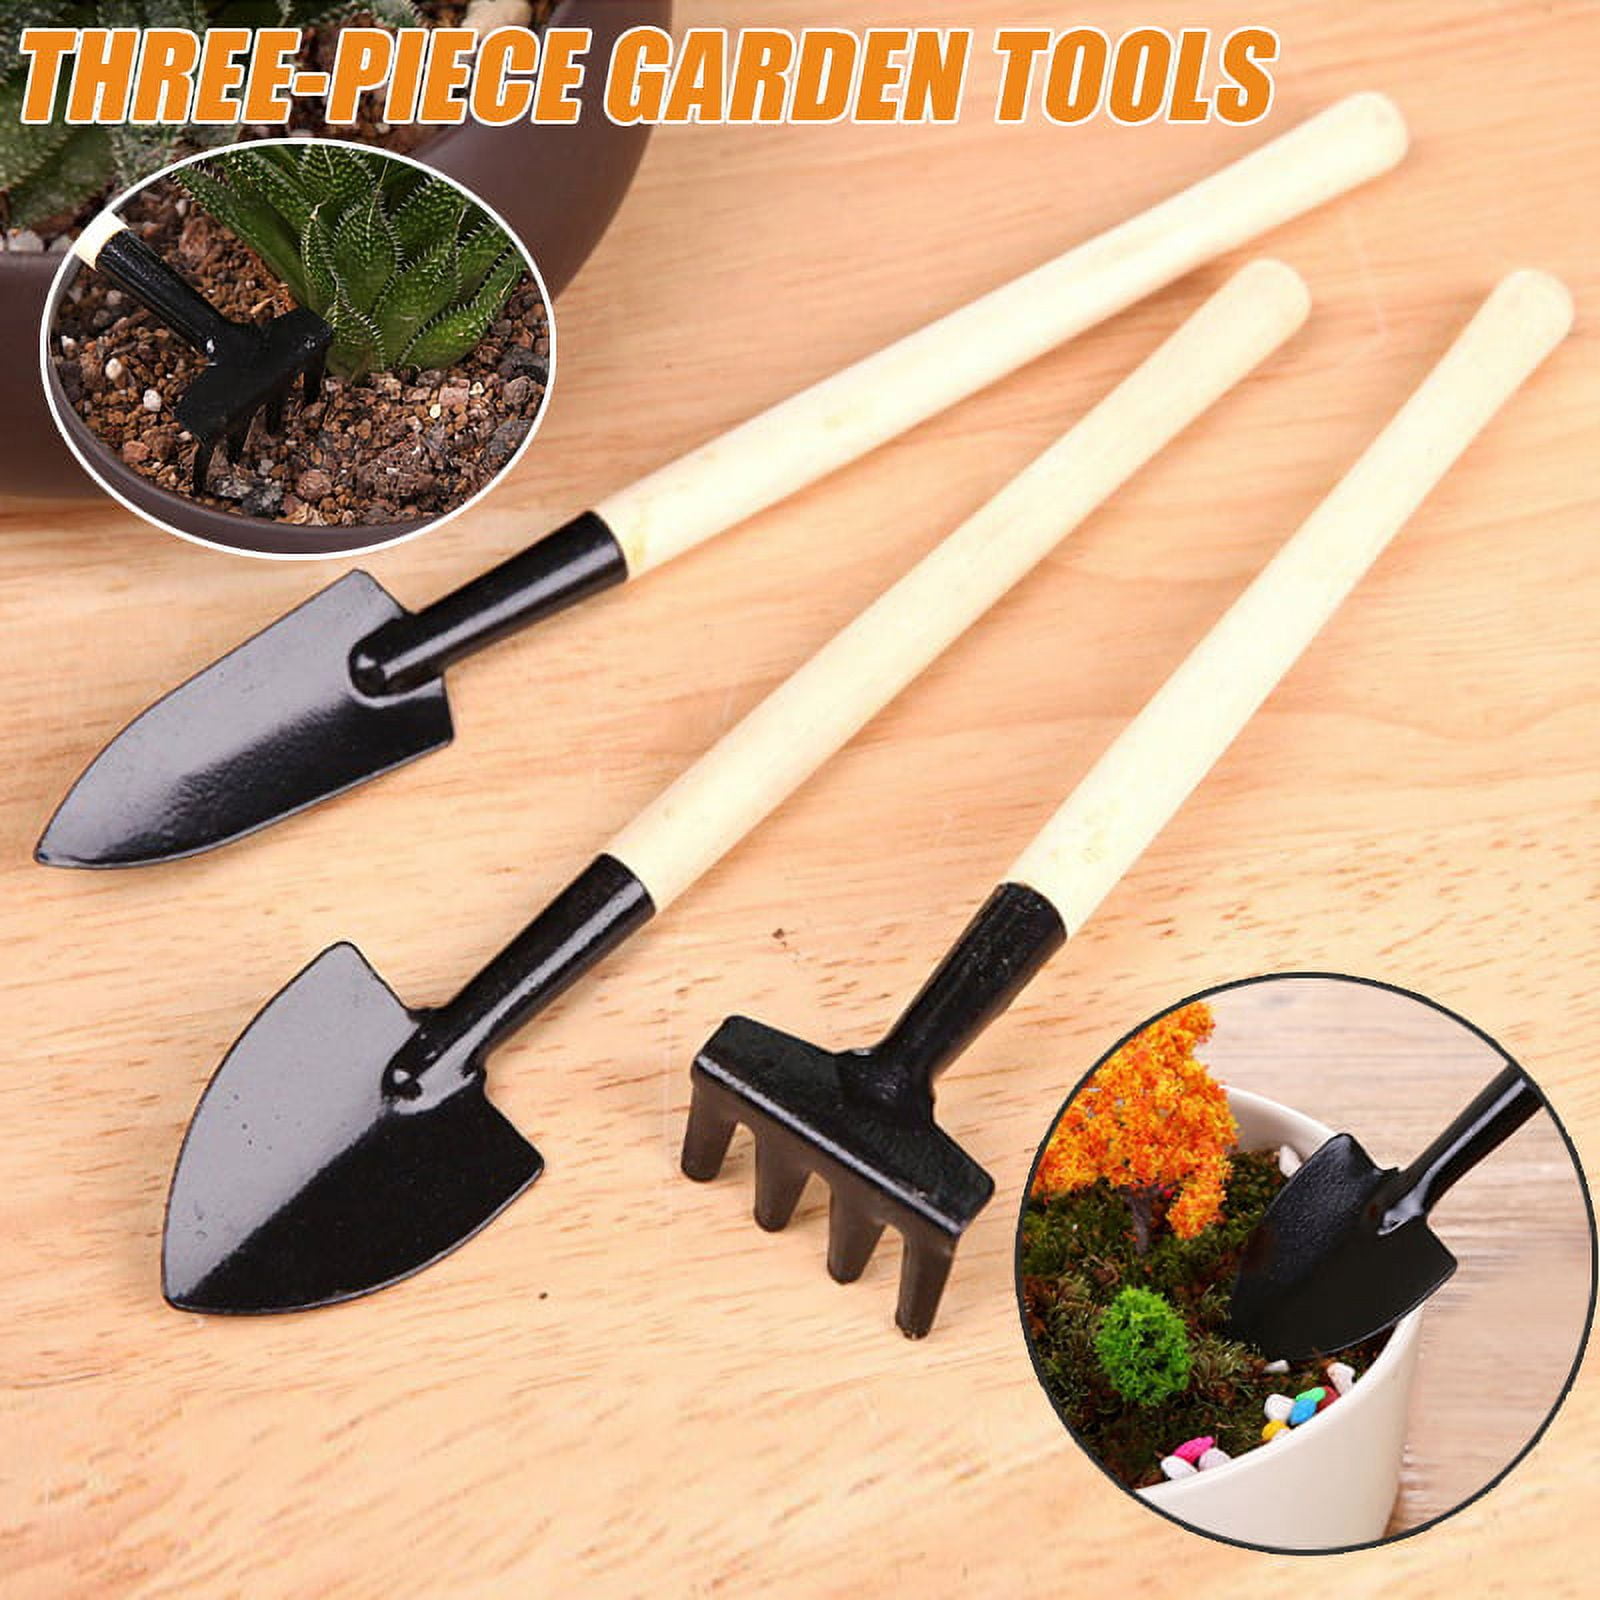 Ames 6-Piece Garden Tool Set - Hand Trowel, Hand Weeder, Hand Rake